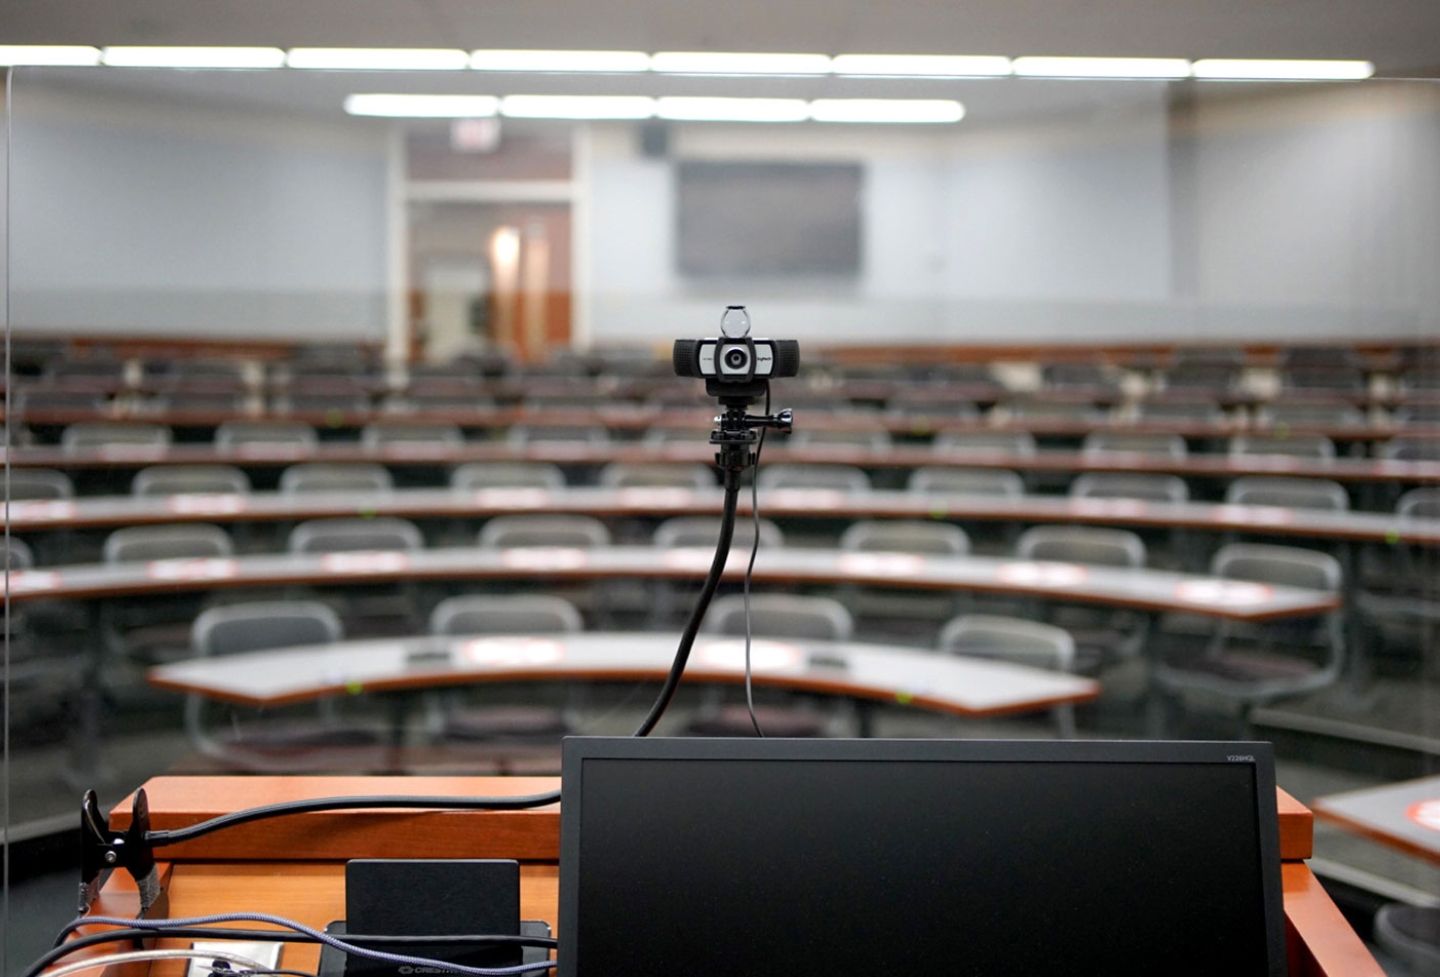 A camera and plexiglass screen at a classroom podium